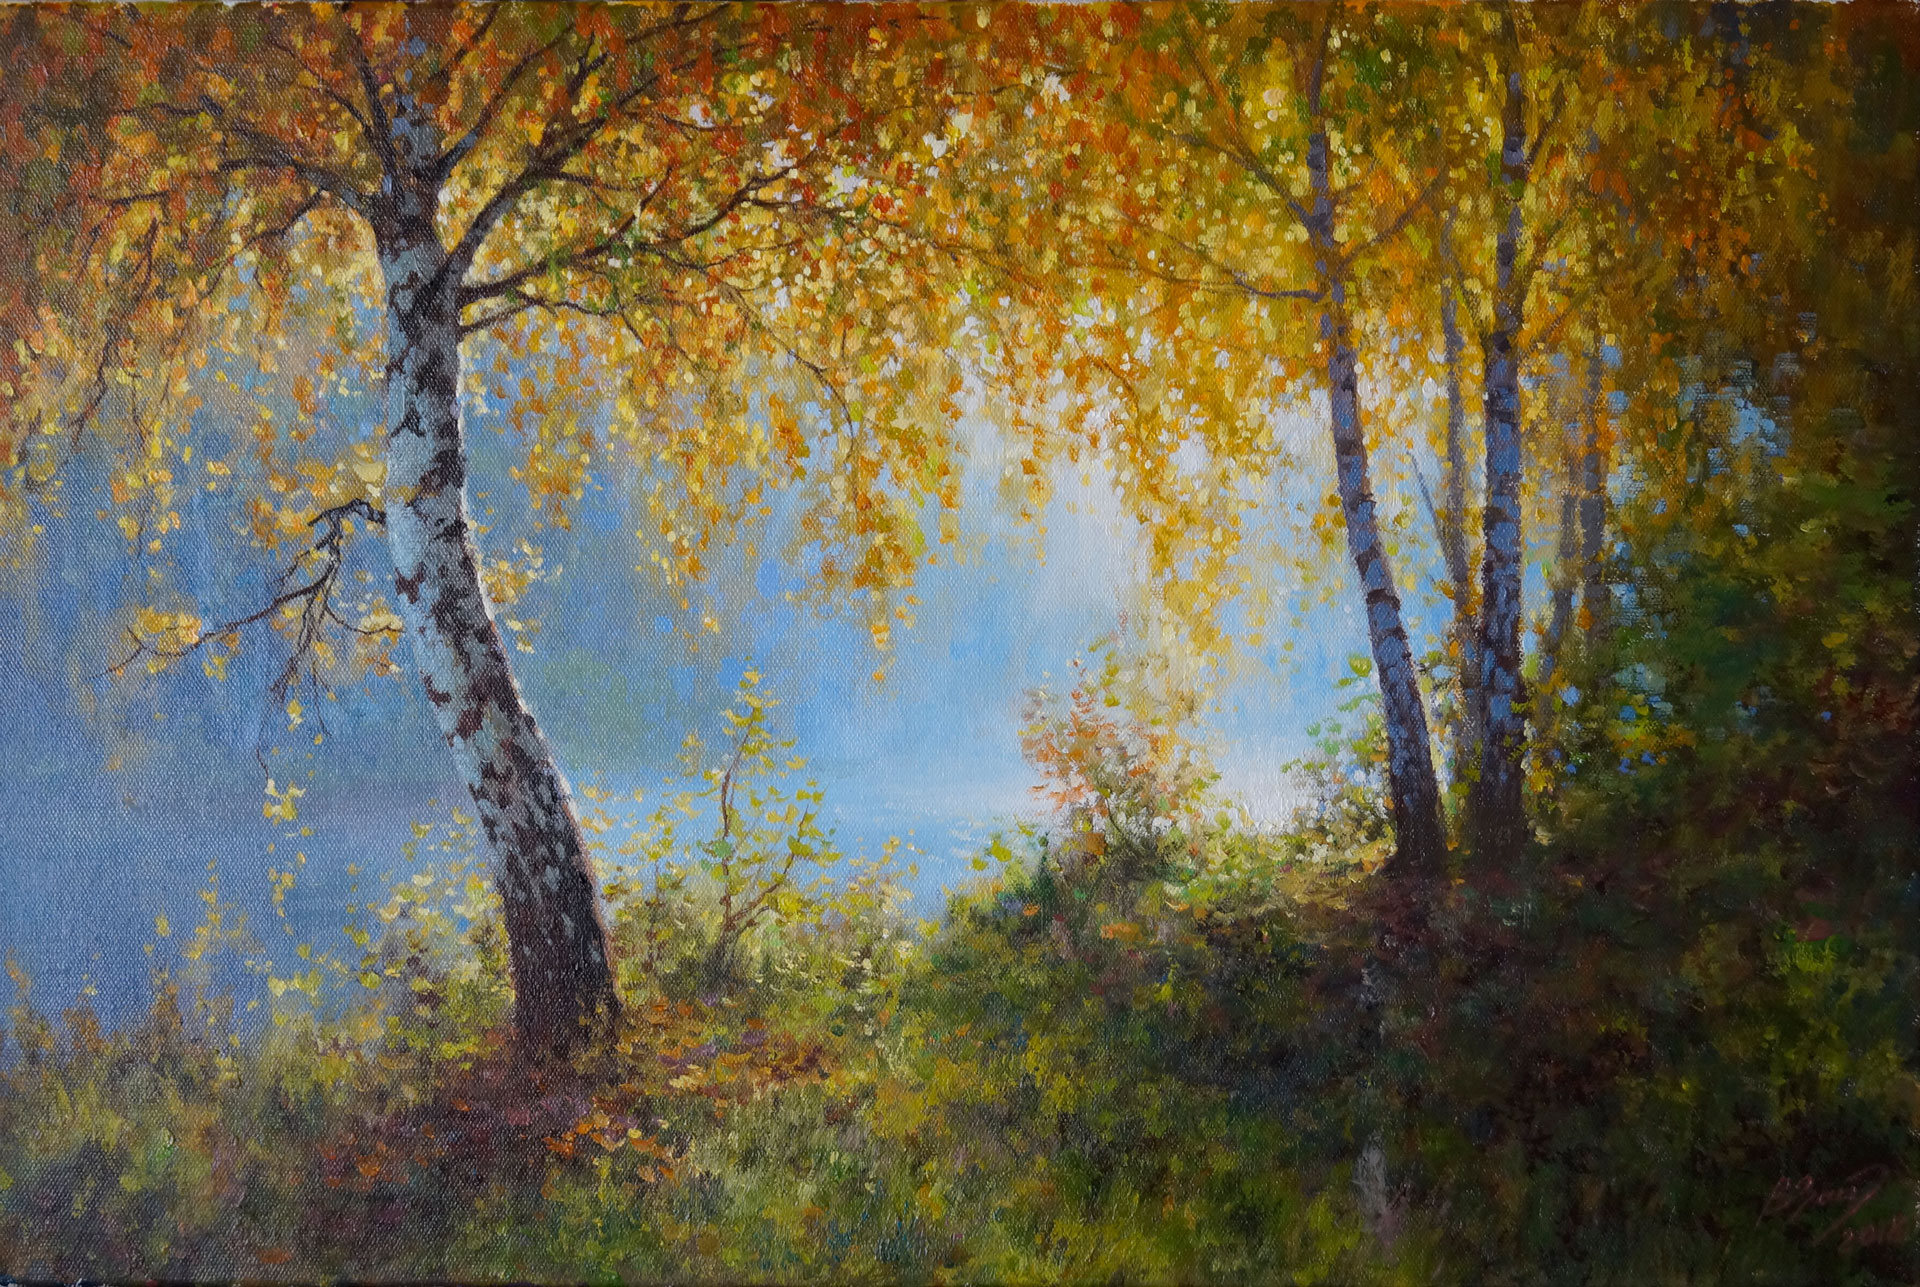 Autumn Sun - 1, Vadim Zainullin, Buy the painting Oil